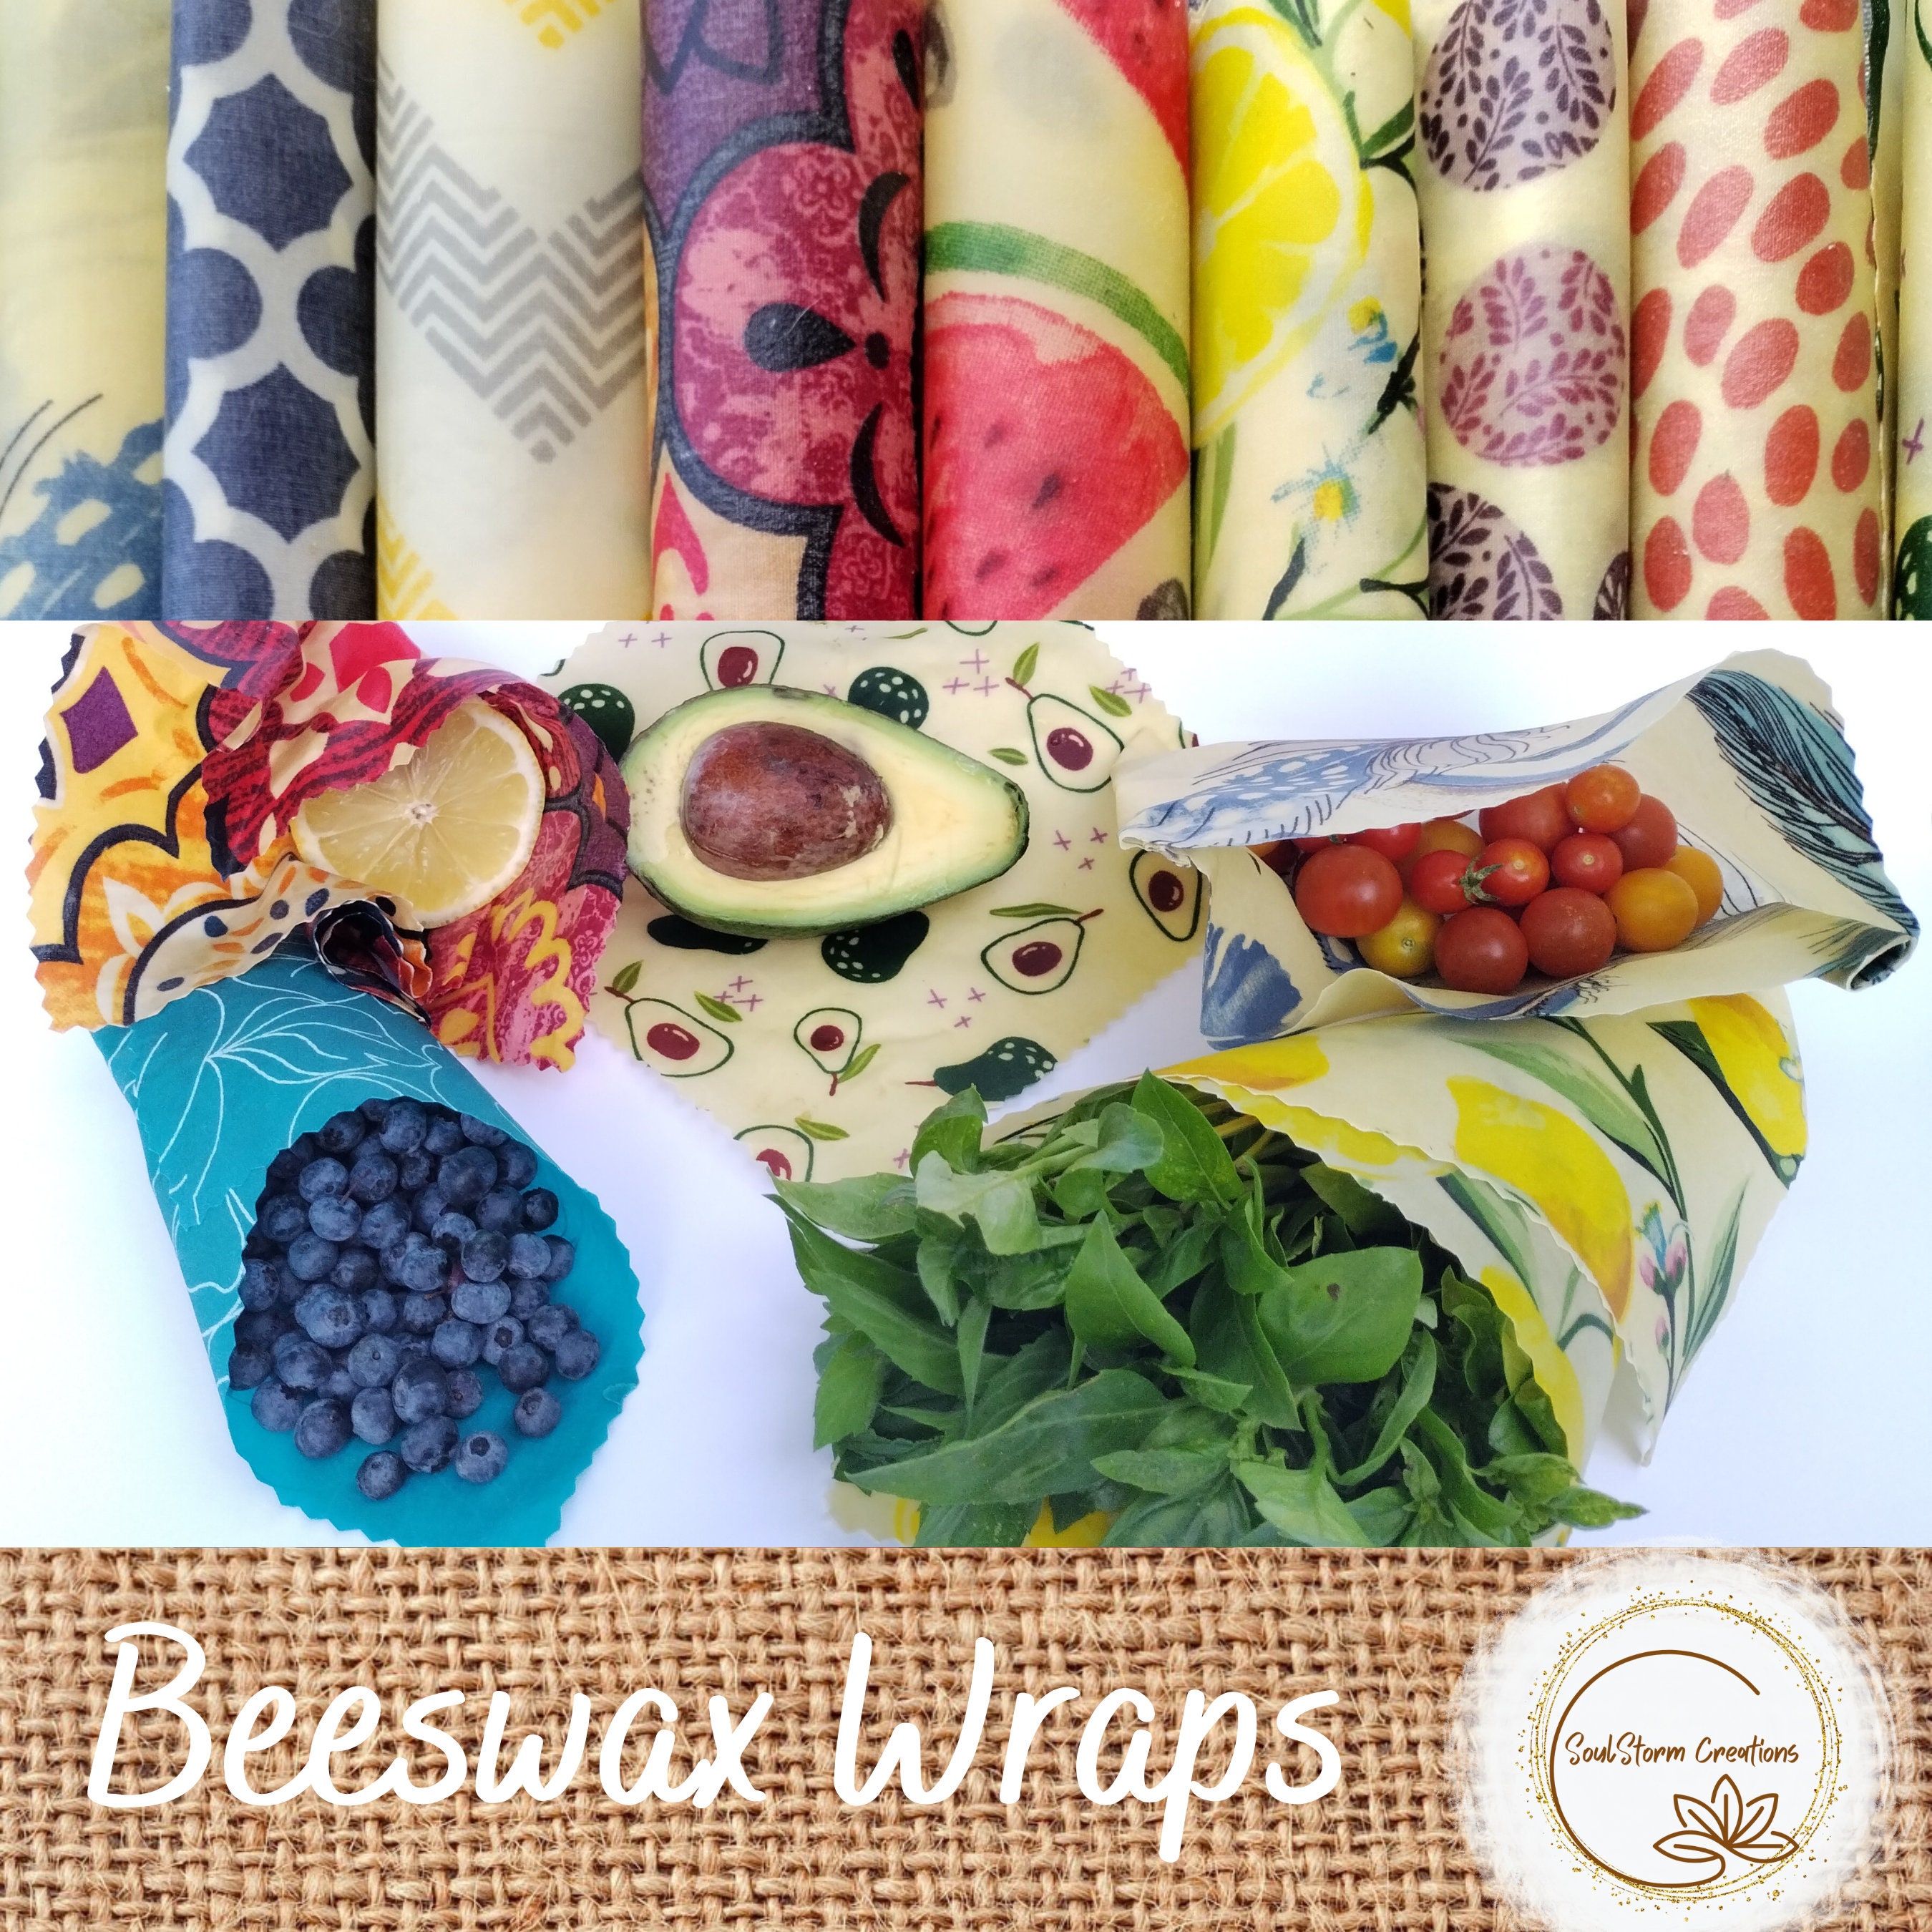 DIY Beeswax Wrap Kit. Zero Waste Kitchen Wraps Kit. Makes 4 Large